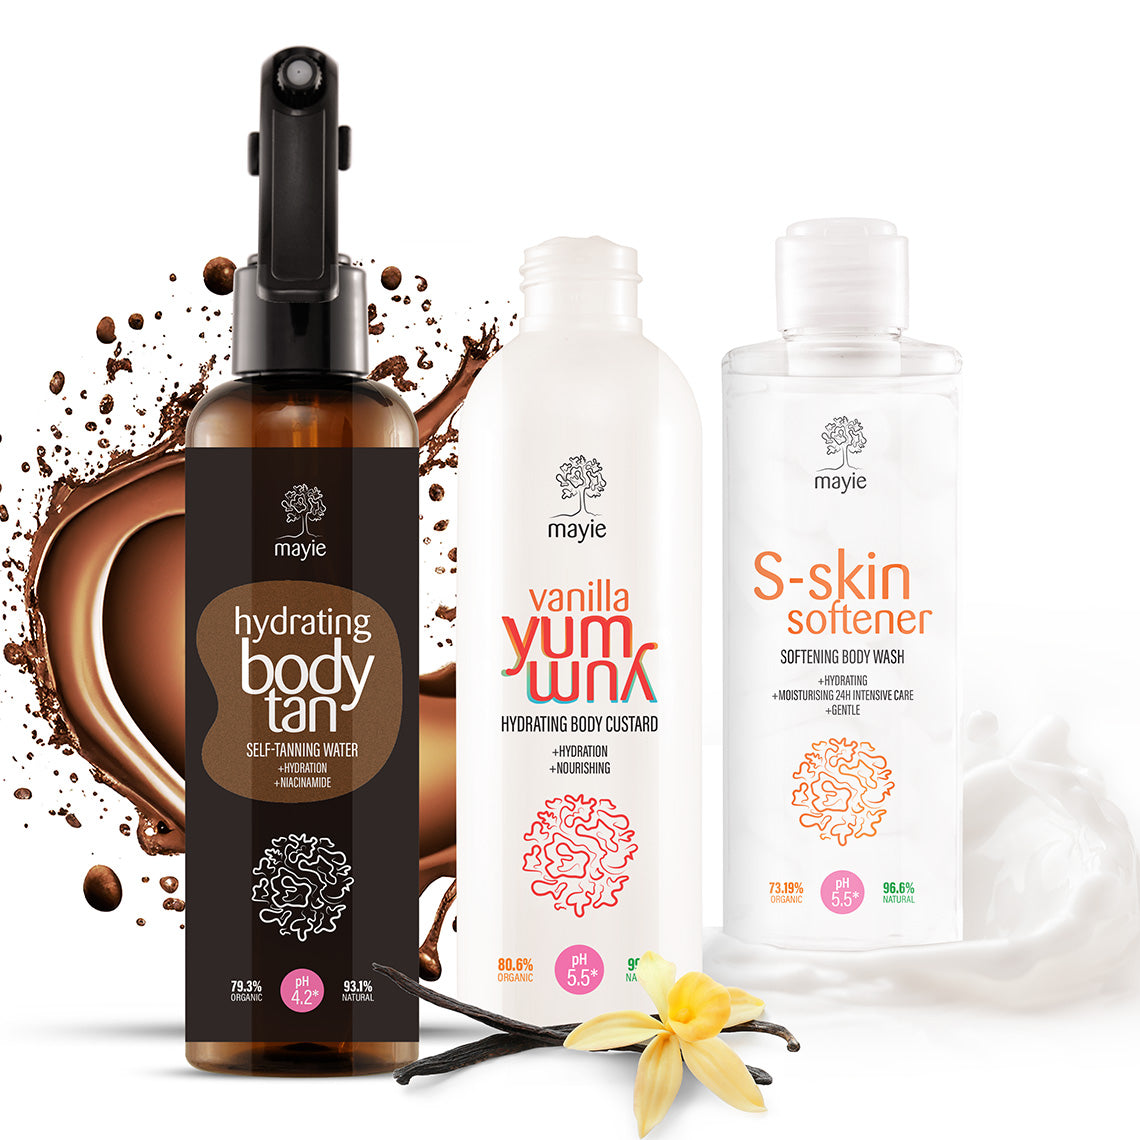 Summer Body Bundle - Hydrating Body Tan, Vanilla Yum Yum, S-skin Softener